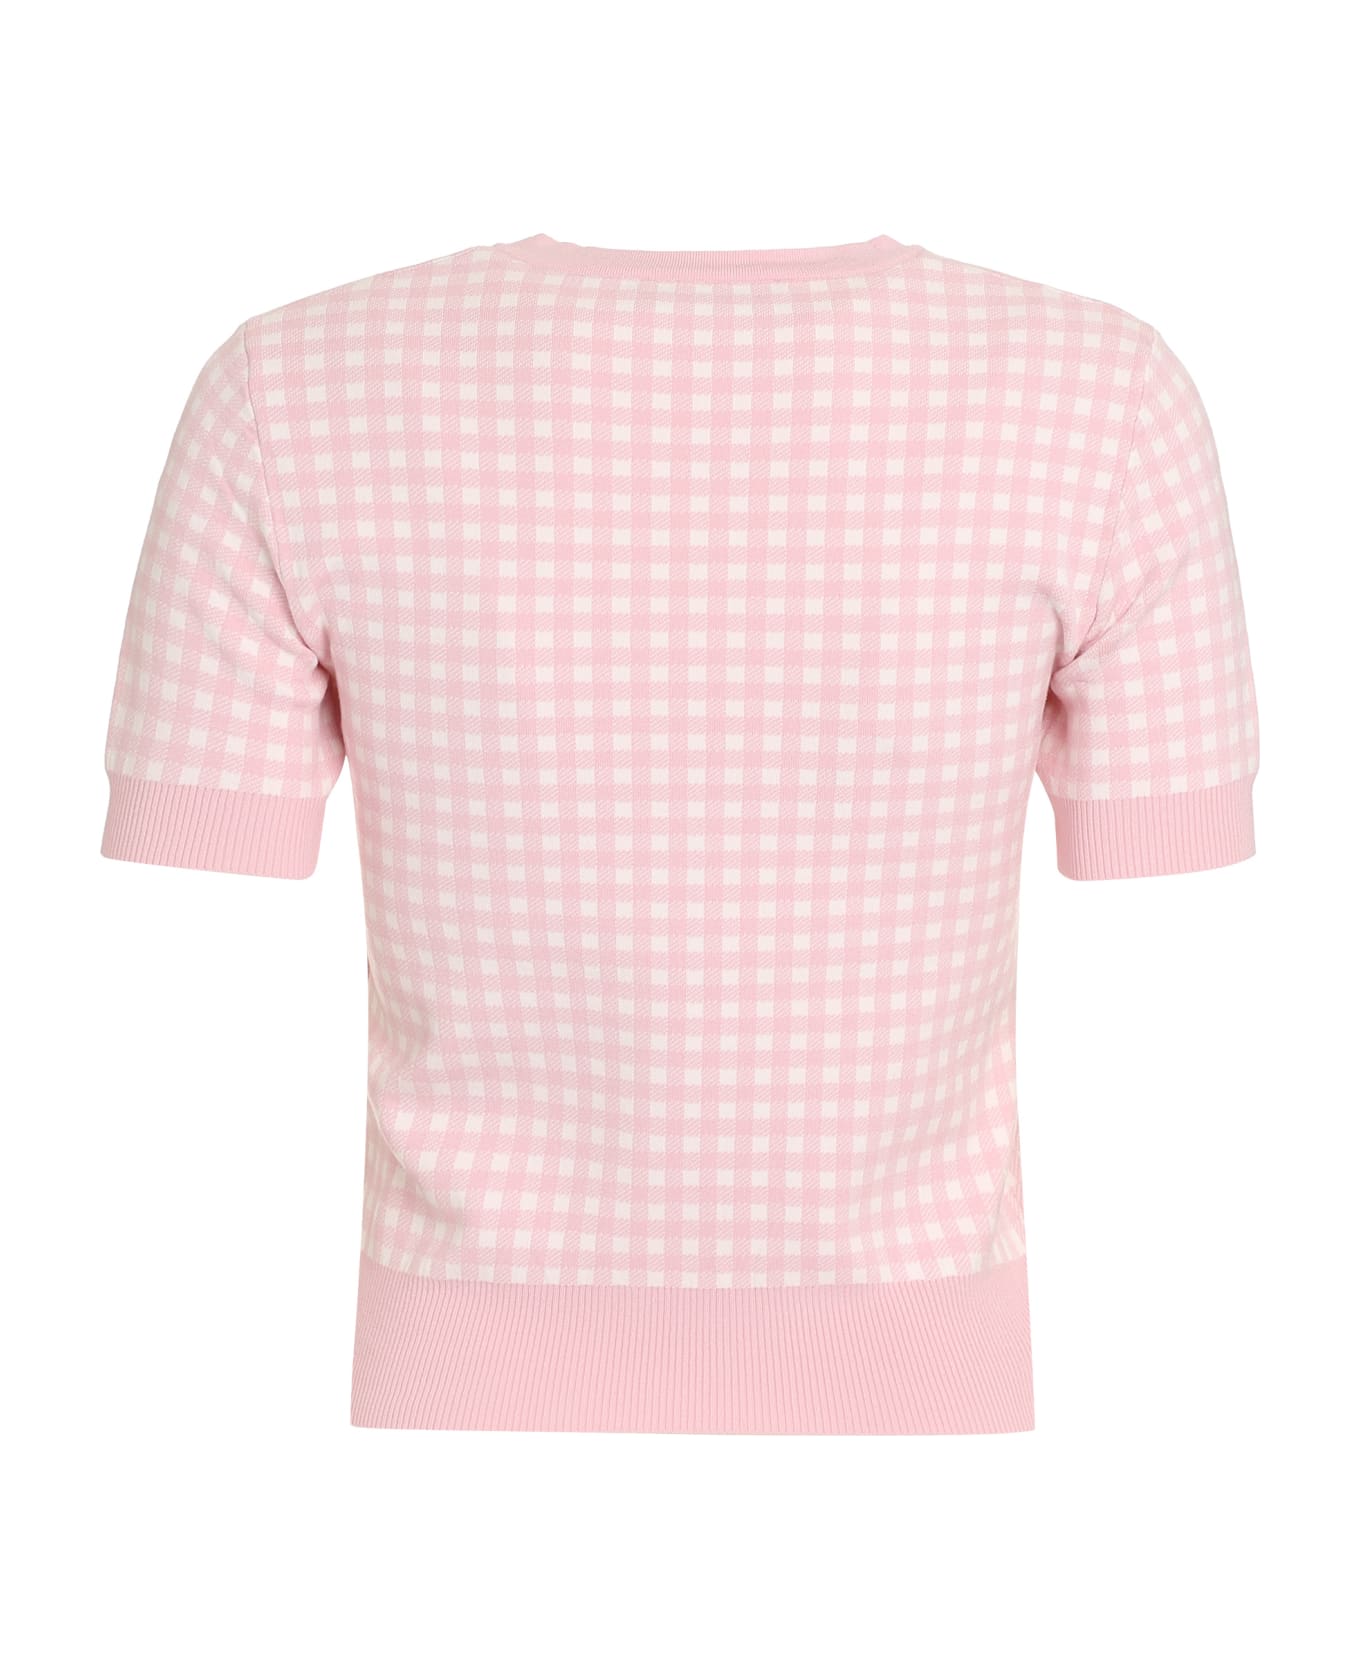 Max Mara Studio Epoca Knitted T-shirt - Pink